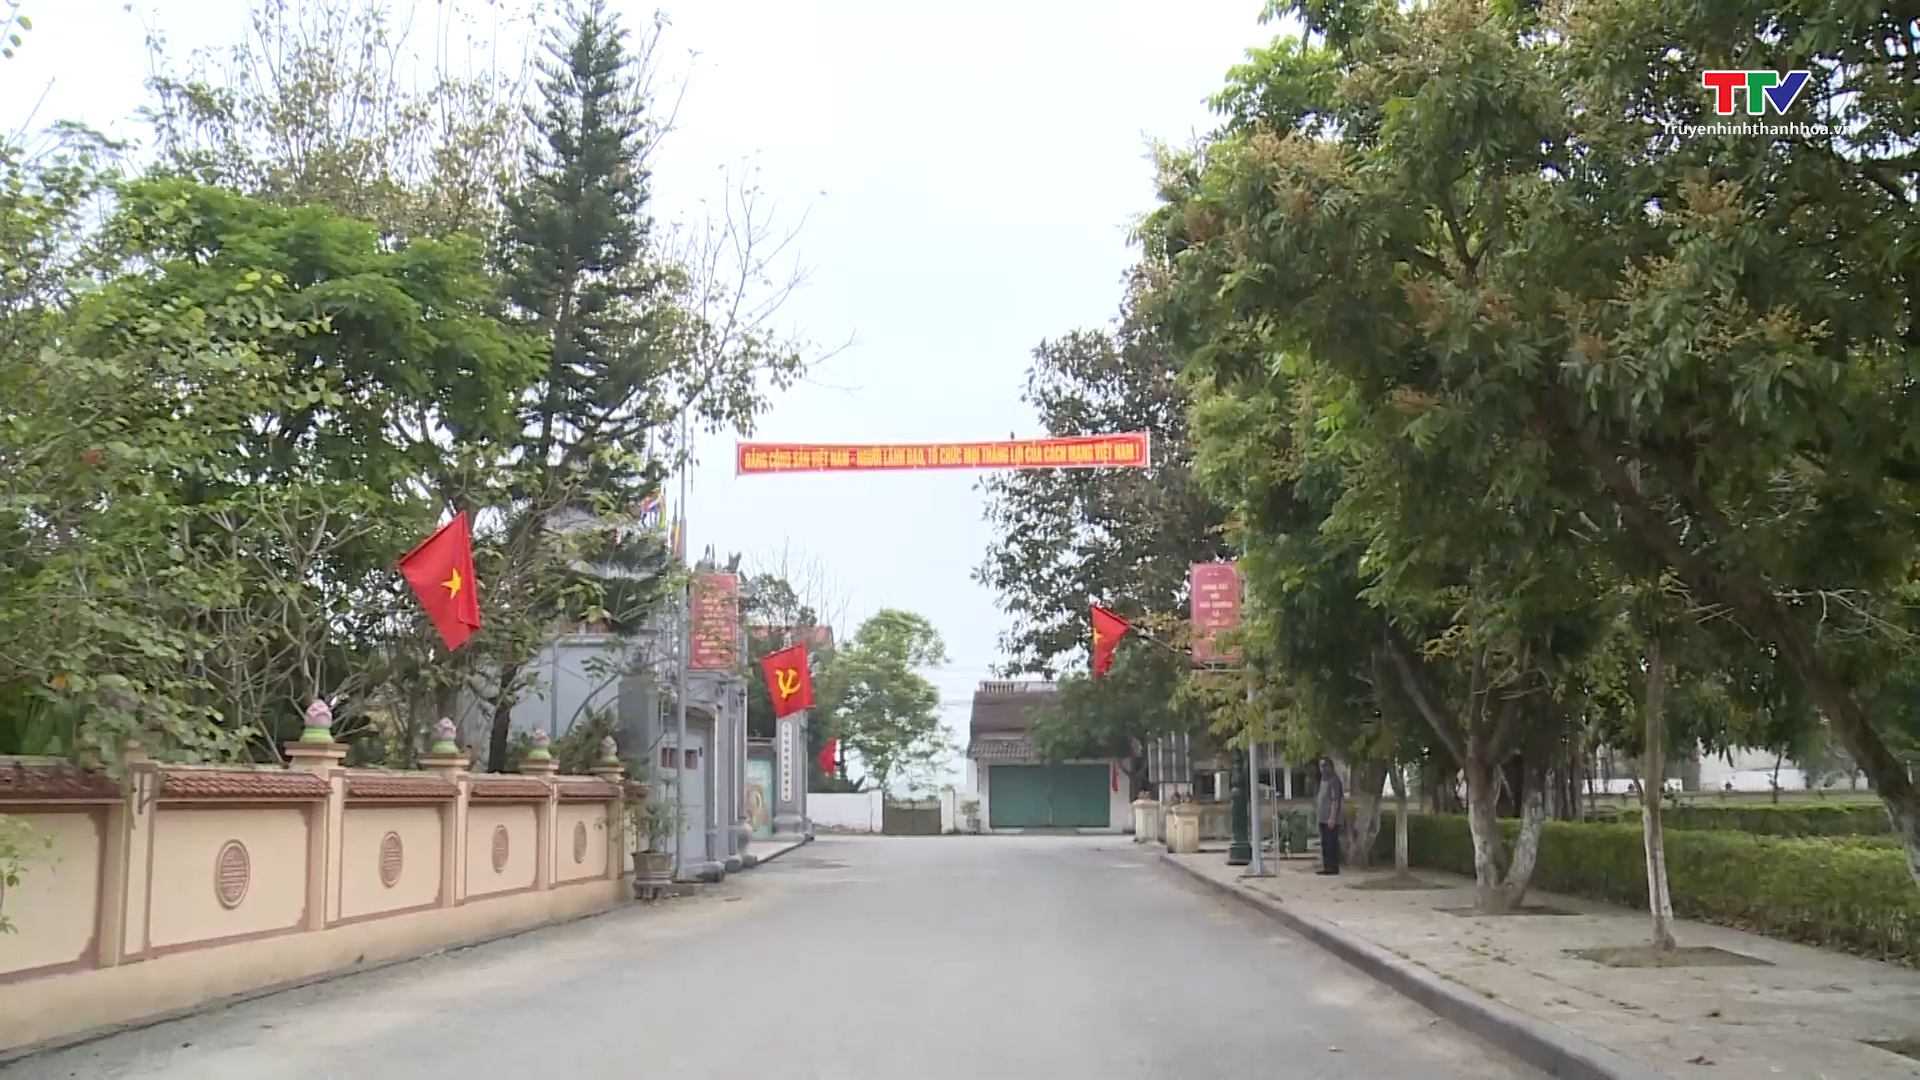 Huyện Yên Định xây dựng Nông thôn mới nâng cao, kiểu mẫu - Ảnh 2.